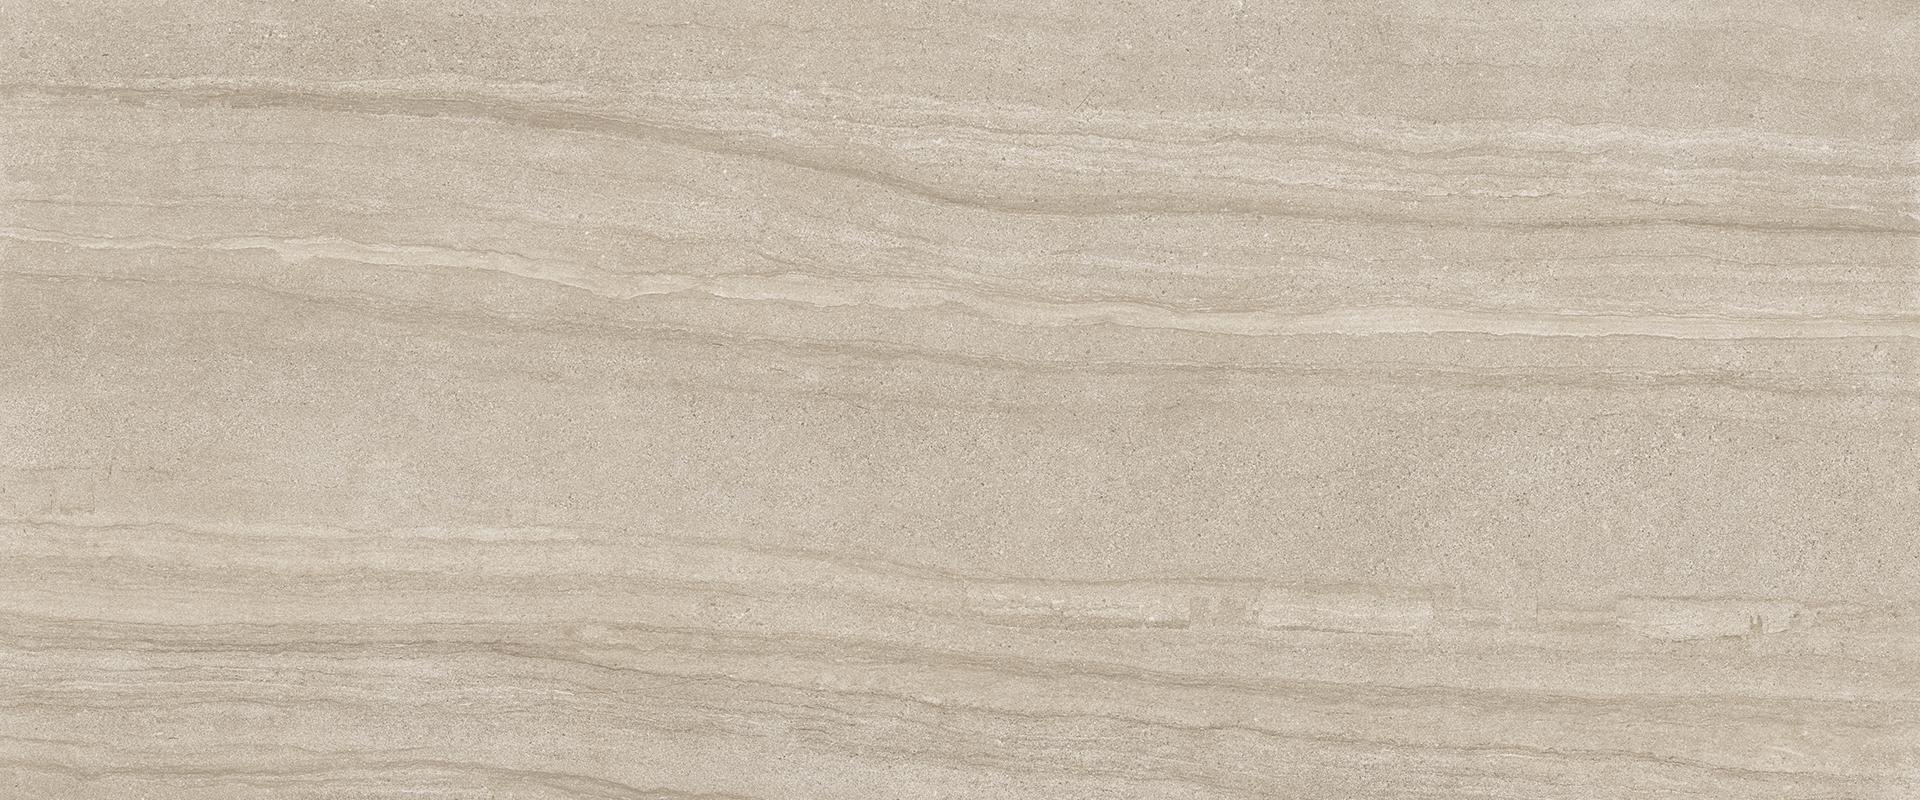 Stone Project: Falda Sand Field Tile (24"x24"x9.5-mm | semi glossy)